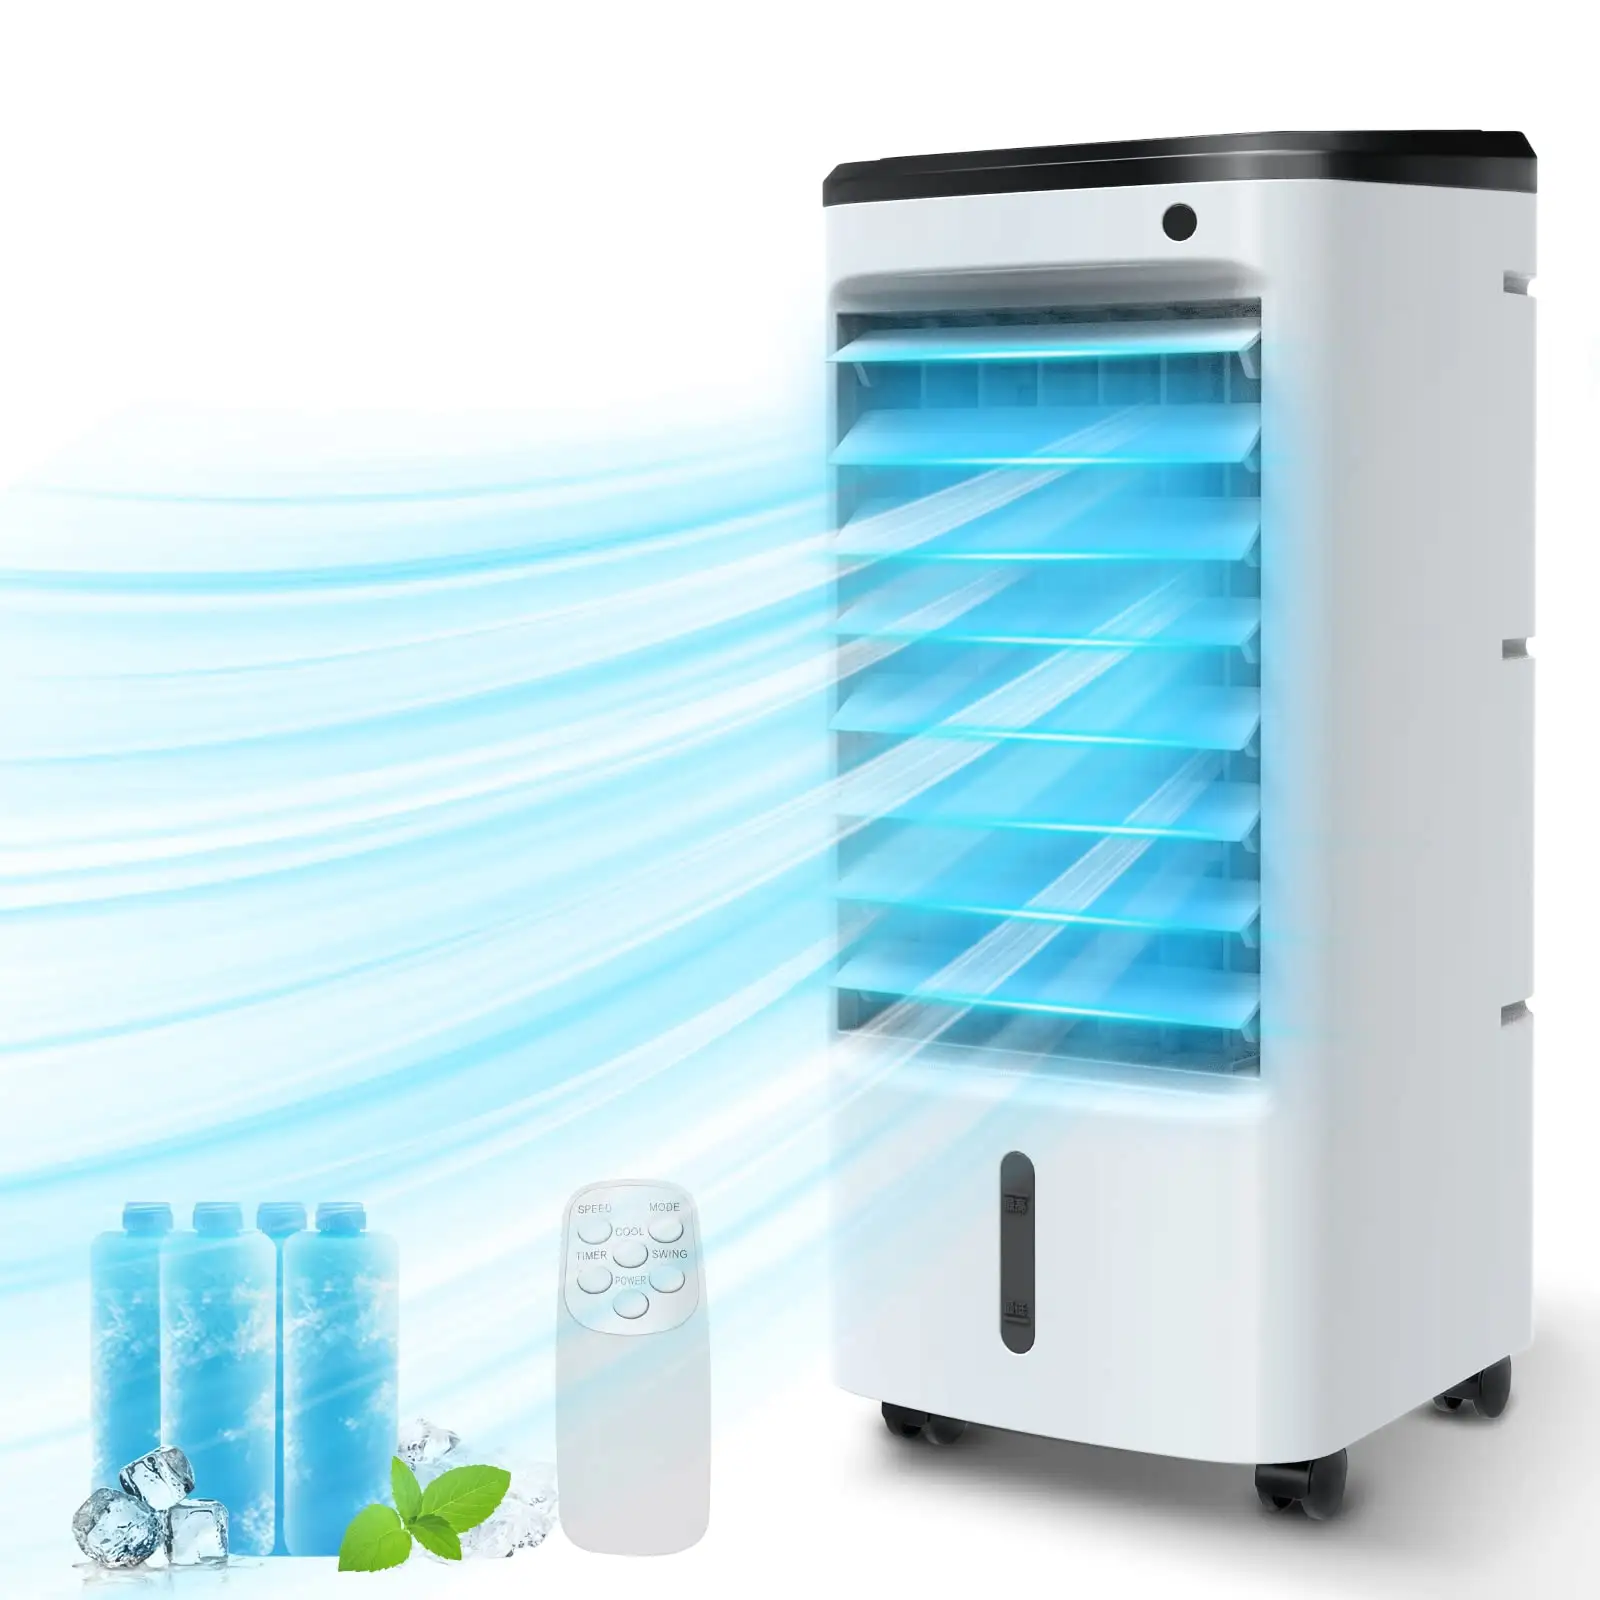 Enfriador de aire evaporativo 3 en 1, ventilador portátil, humidificador, refrigeración con temporizador de caja de hielo y Control remoto, enfriador evaporativo Personal